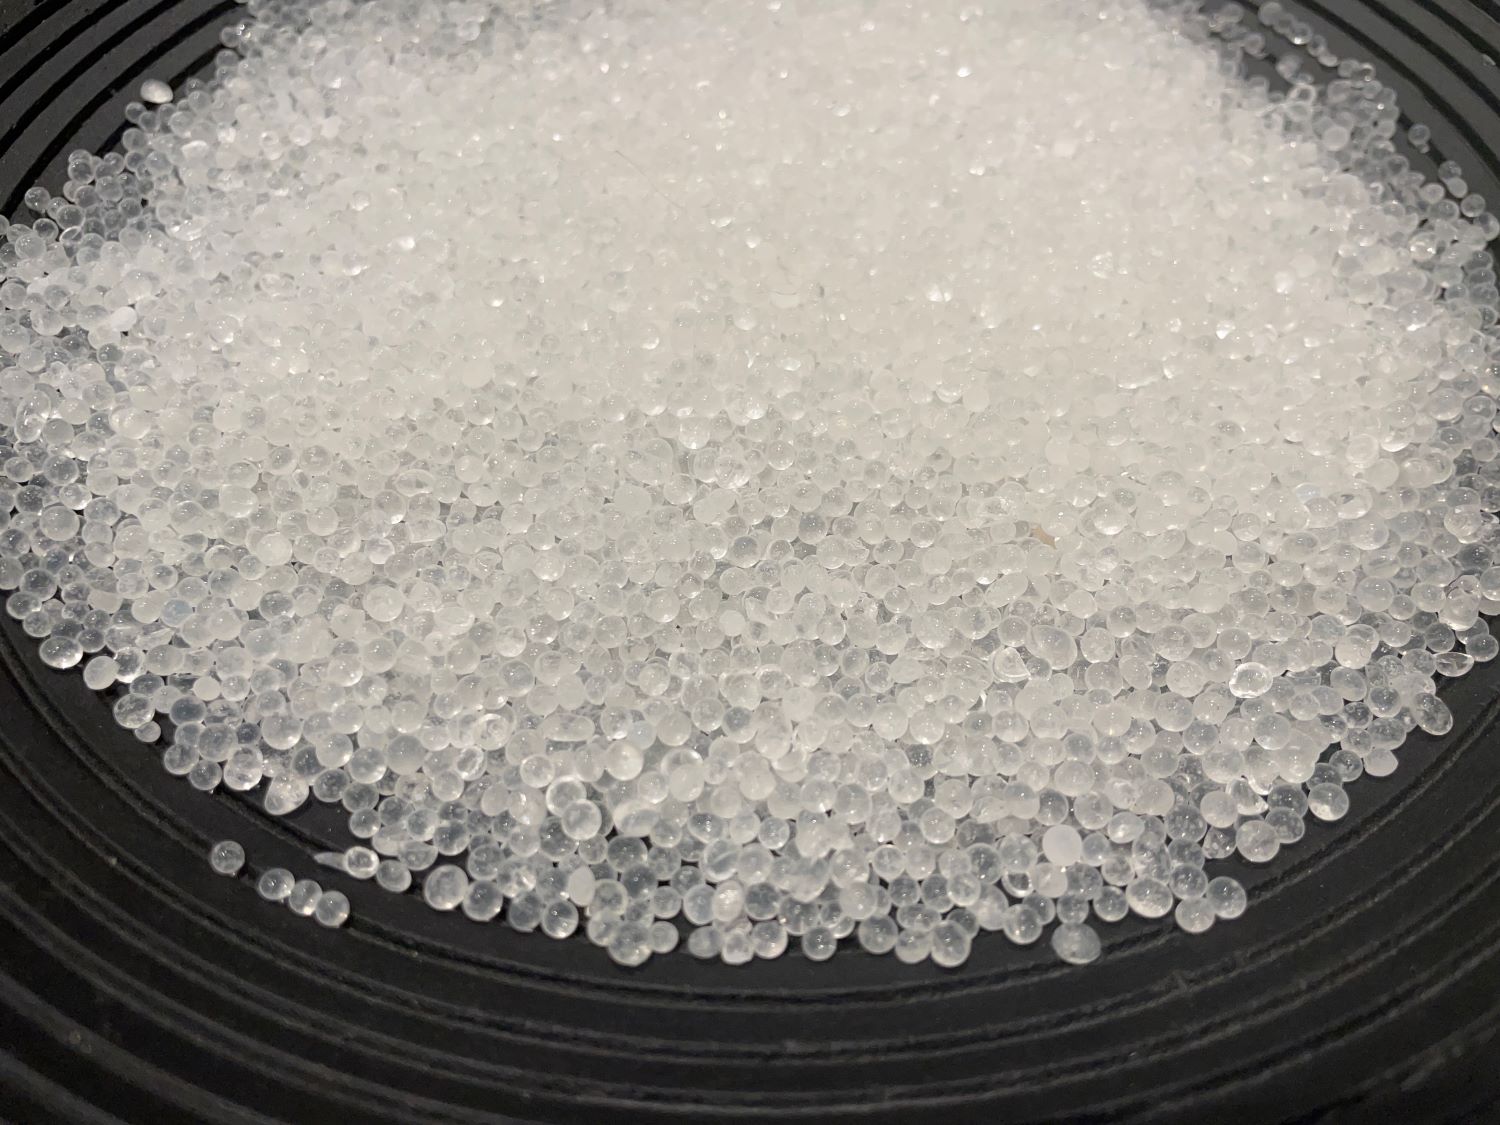 Super Absorbent Dry Polymer Pellets